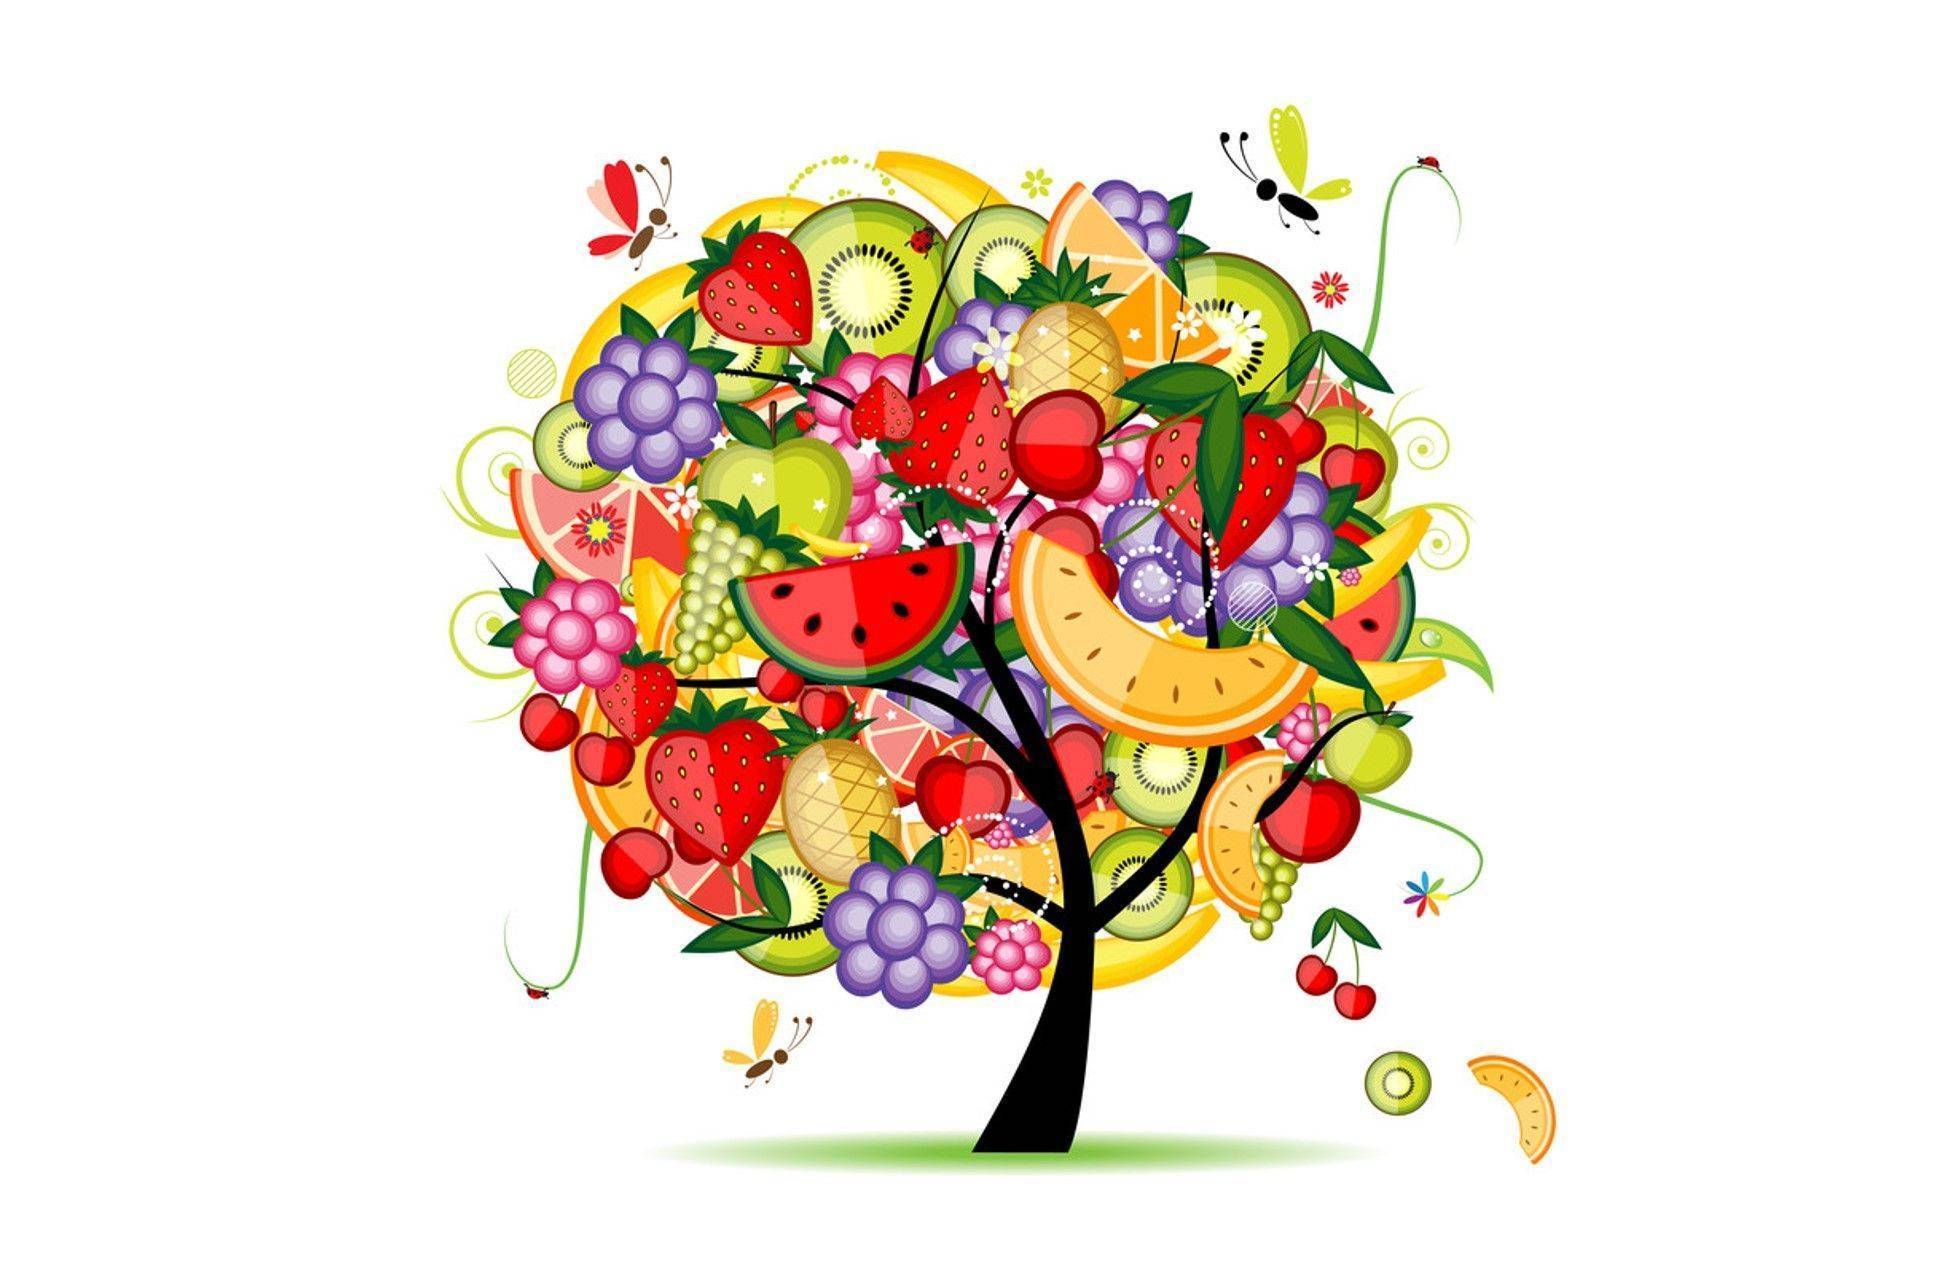 seker hastalari meyve yiyebilir mi meyveler ve diyabet hakkinda faydali bilgiler